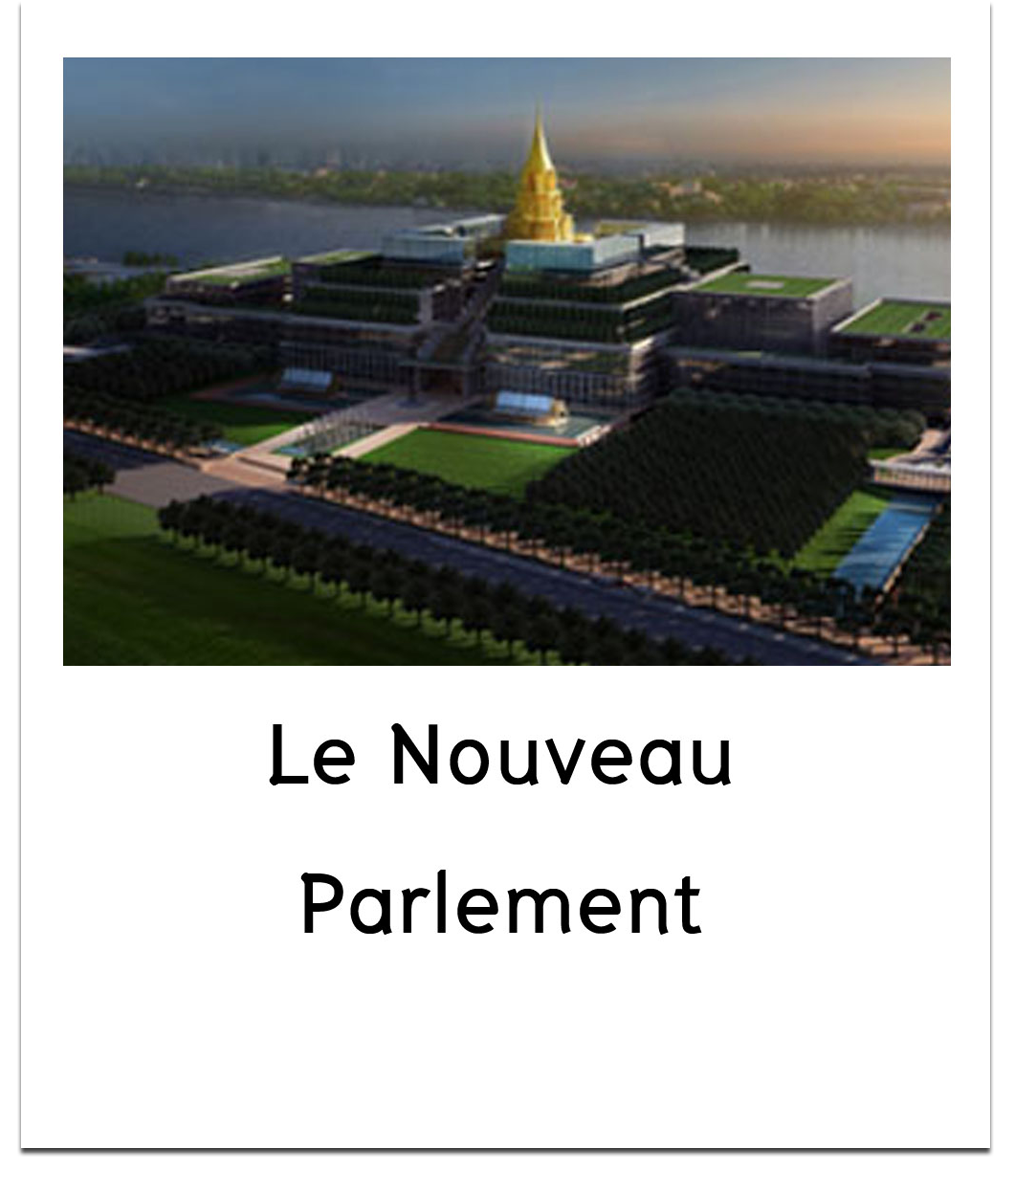    Le Nouveau Parlement    